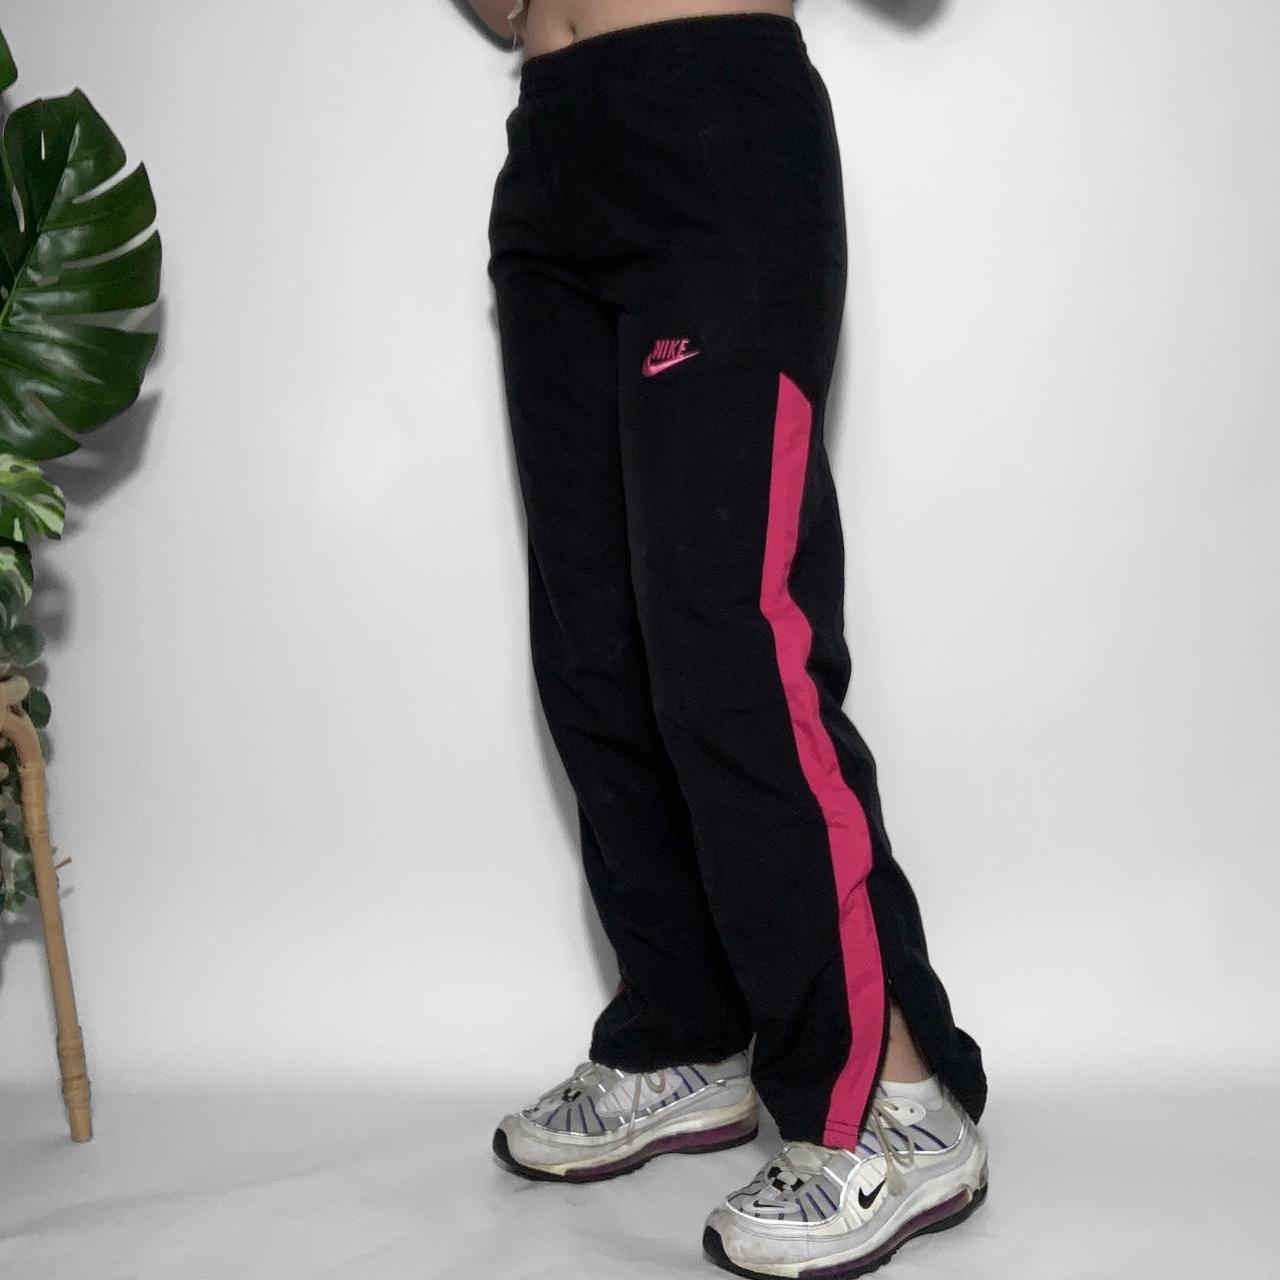 Vintage Nike track pants. Early 2000s / Y2K era. - Depop